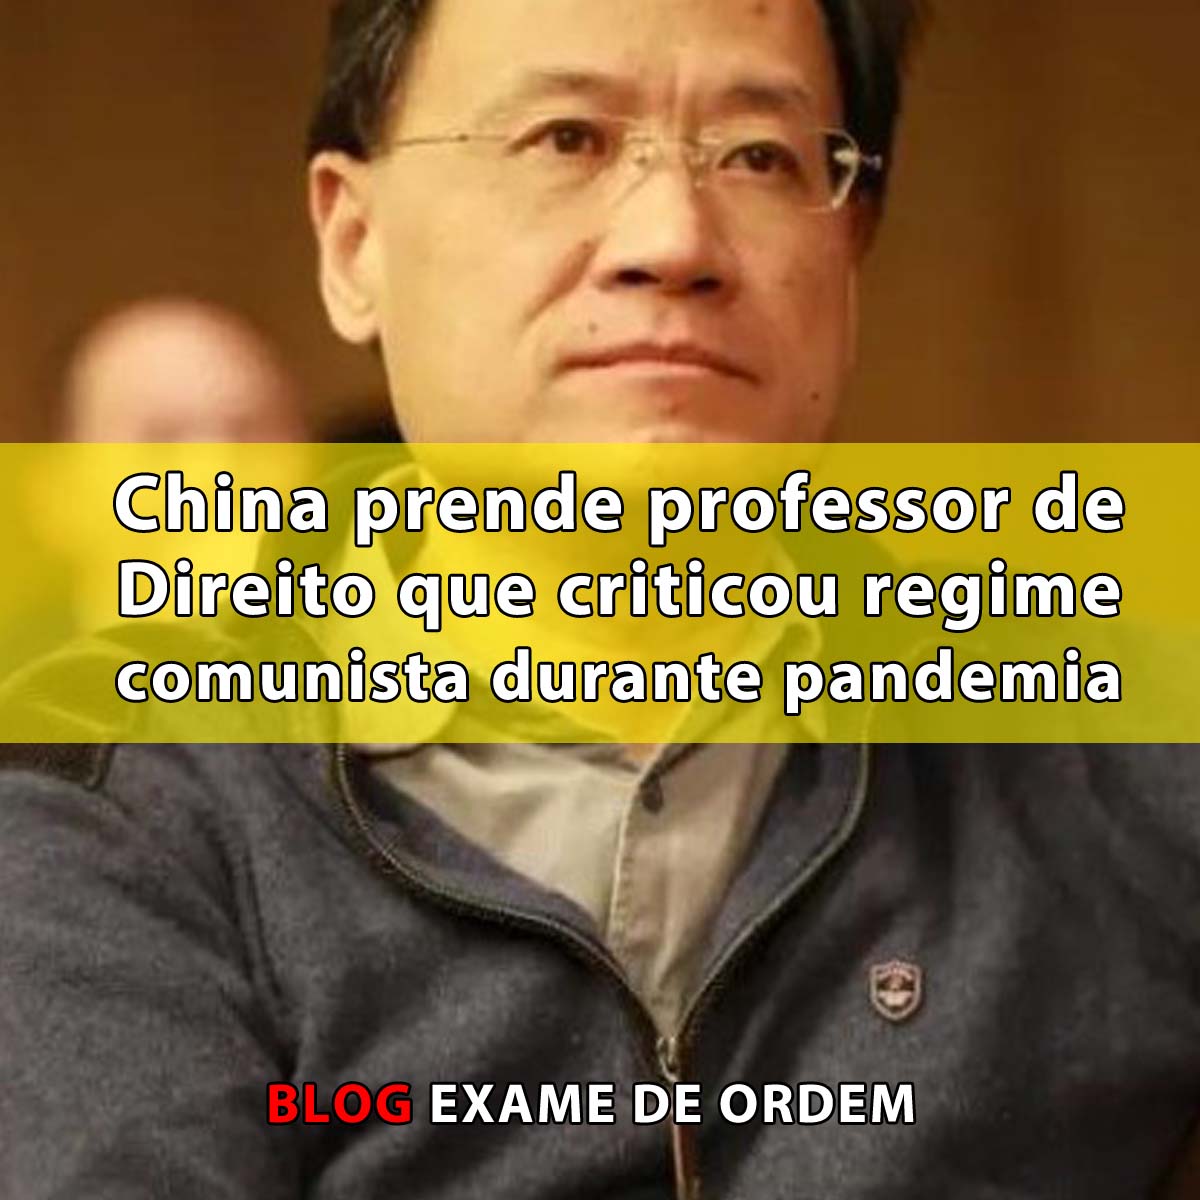 China prende professor de Direito que criticou regime comunista durante pandemia